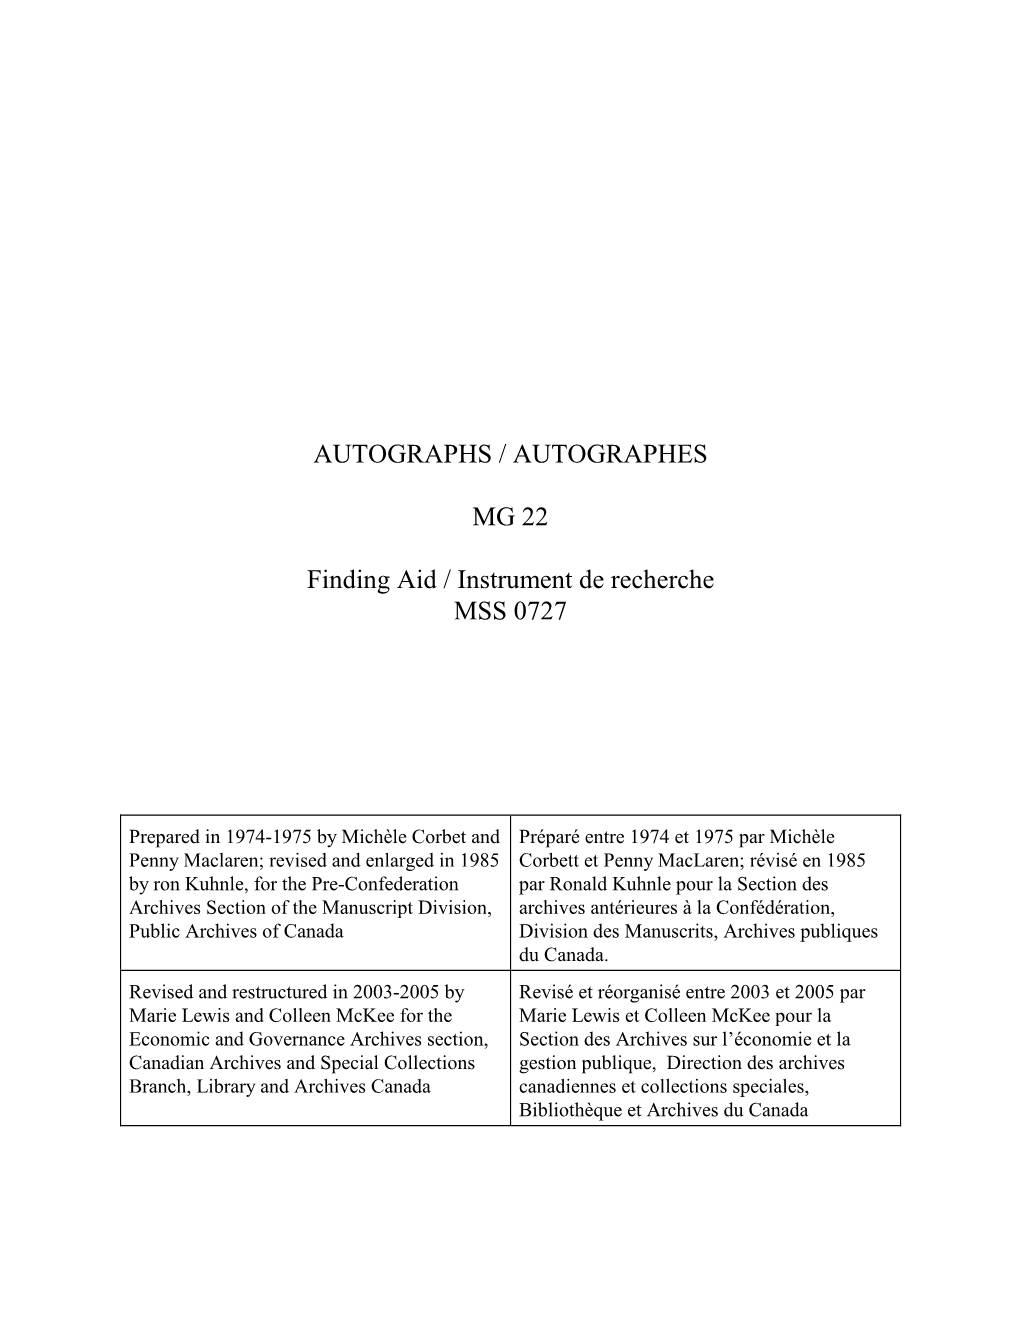 AUTOGRAPHS / AUTOGRAPHES MG 22 Finding Aid / Instrument De